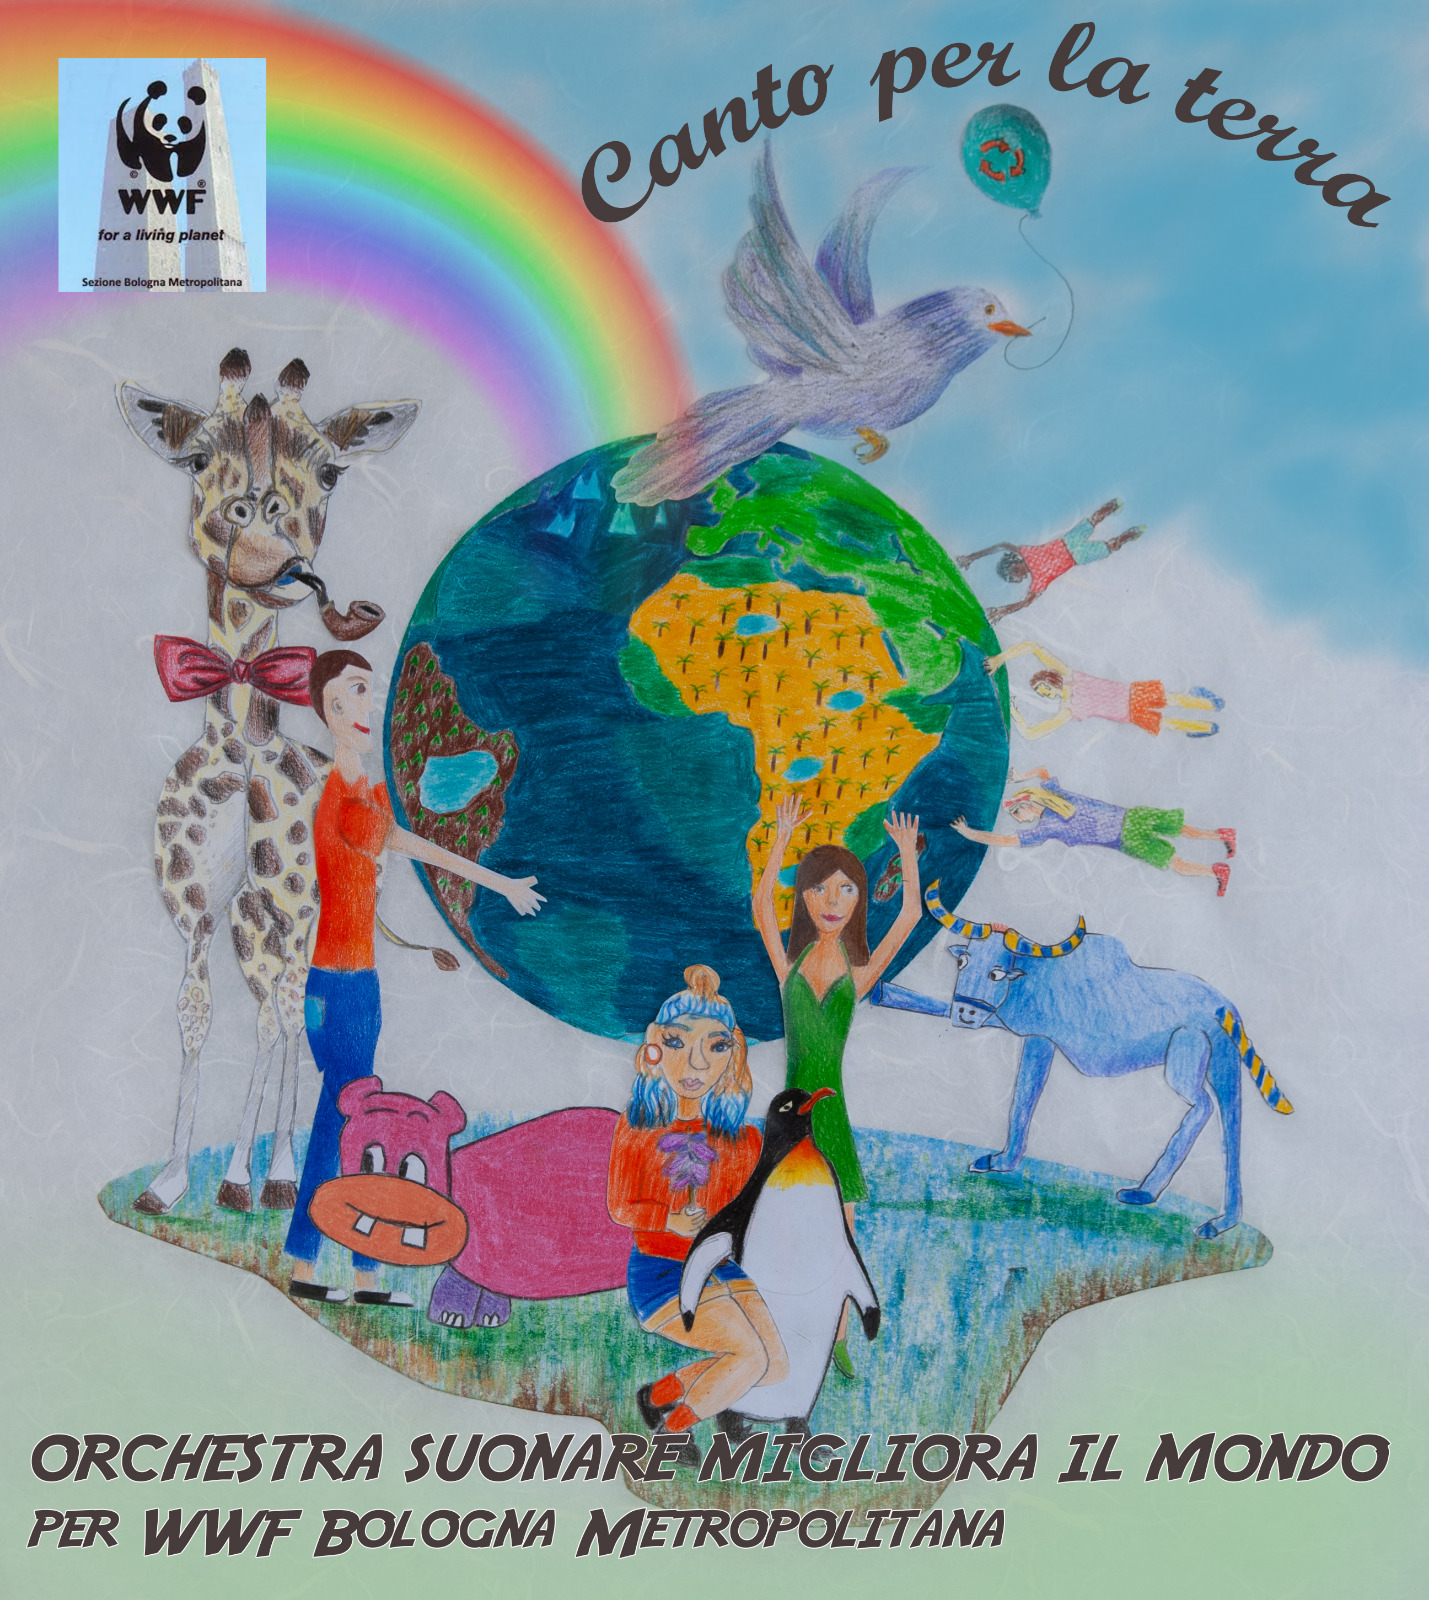 L&#8217;Orchestra Suonare Migliora il Mondo per WWF Bologna: &#8220;Canto per la Terra&#8221; è un inno al rispetto della natura